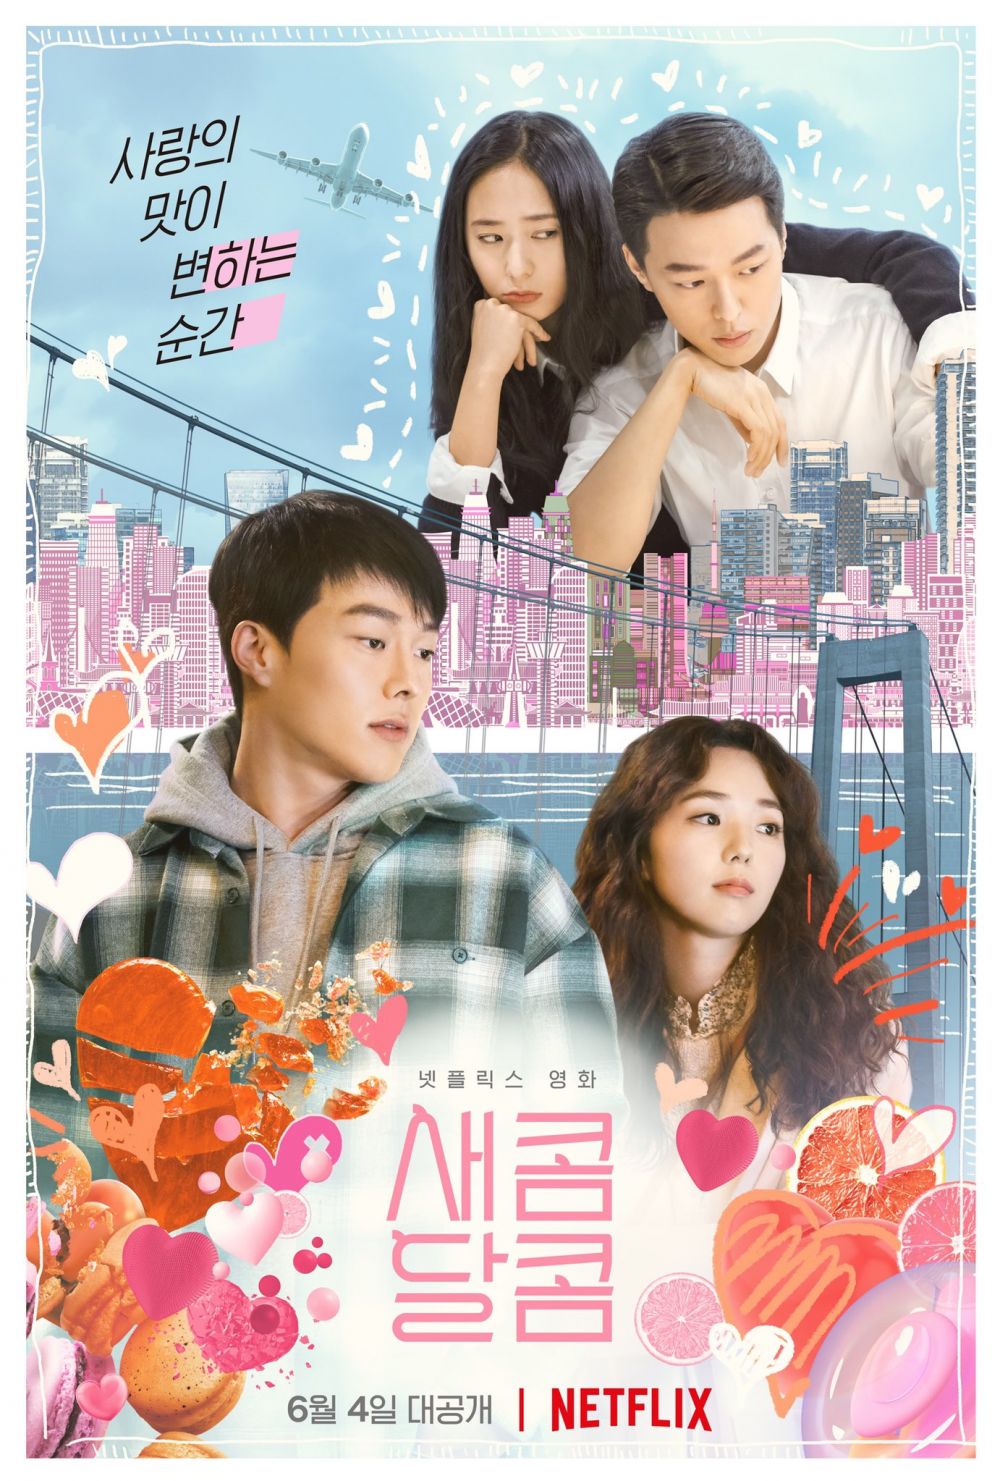 9 Film drama korea terbaik 2021, mulai kisah romantis hingga aksi